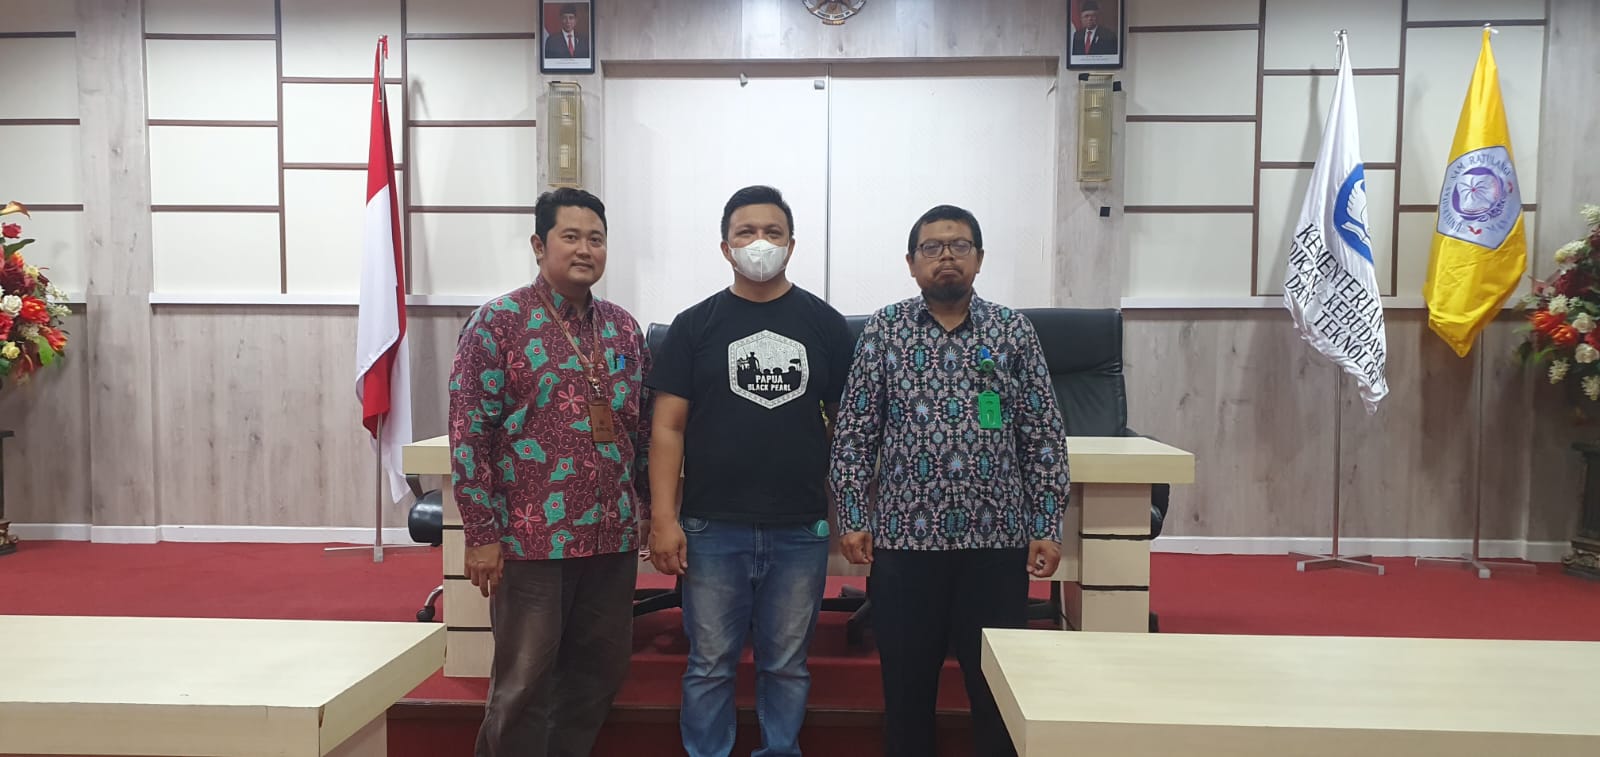 Lelang Barang Milik Negara di Universitas Sam Ratulangi Manado